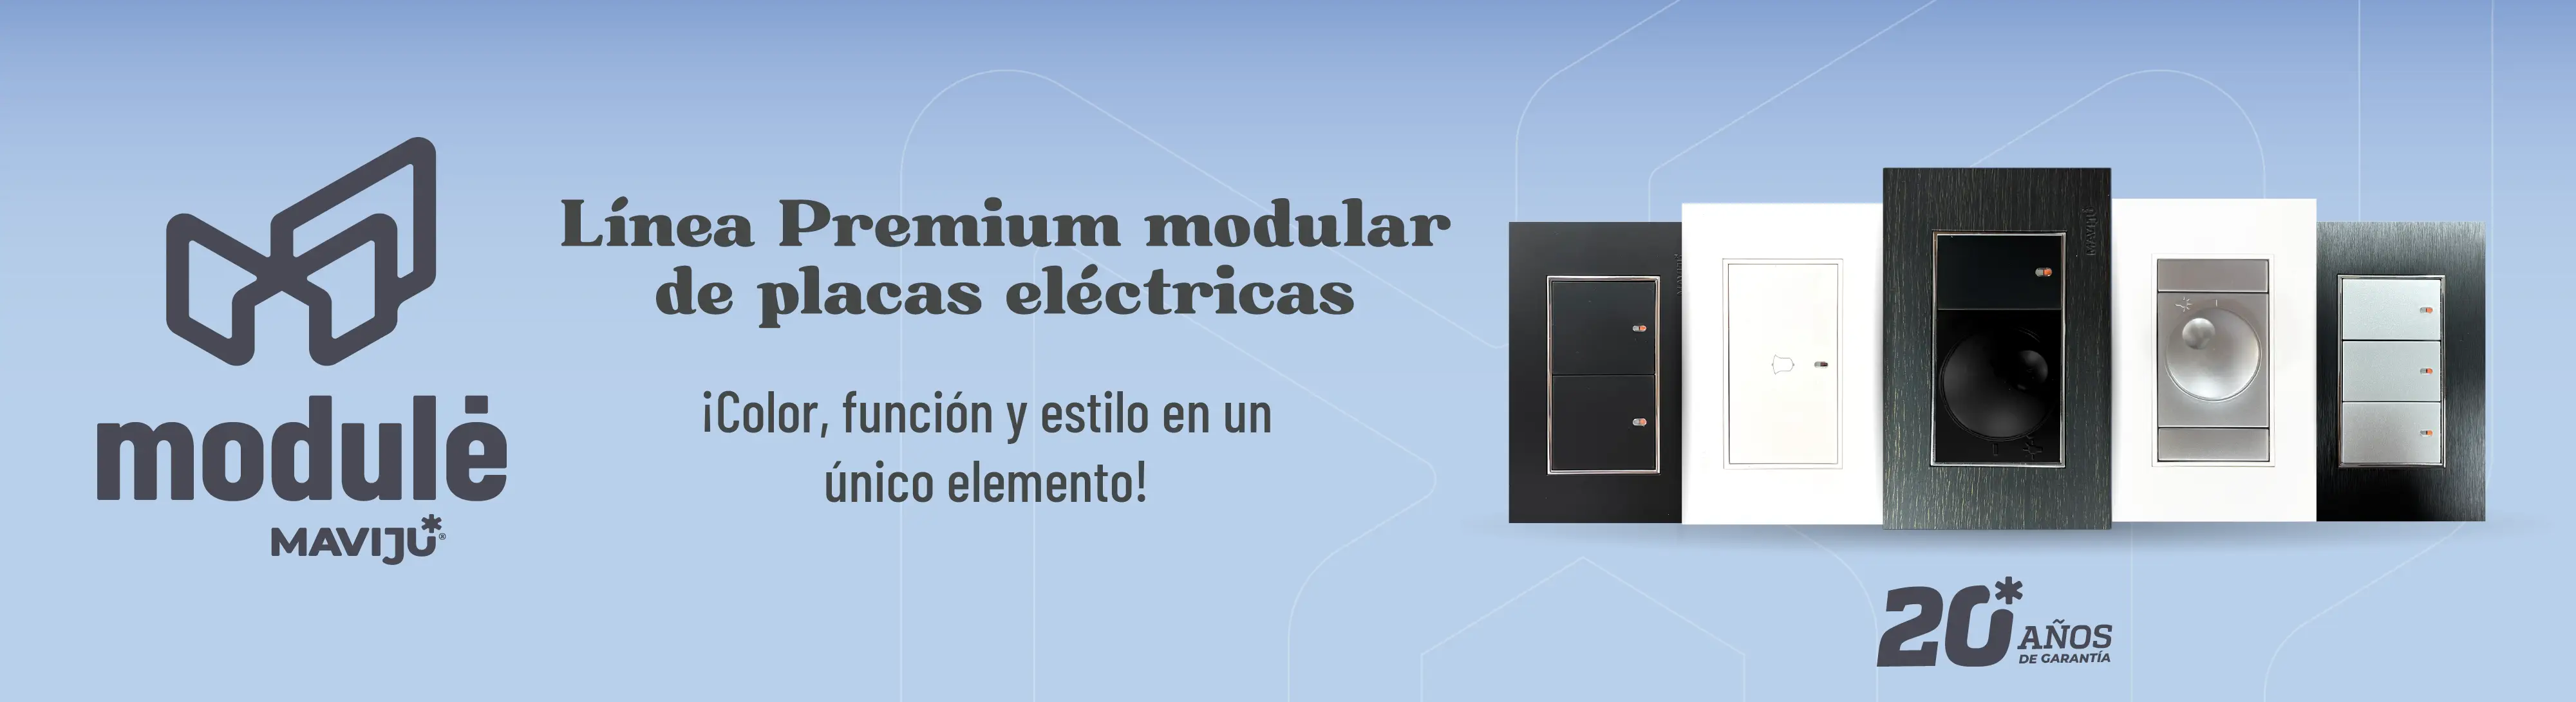 Modulé placas eléctricas modulares premium by Maviju